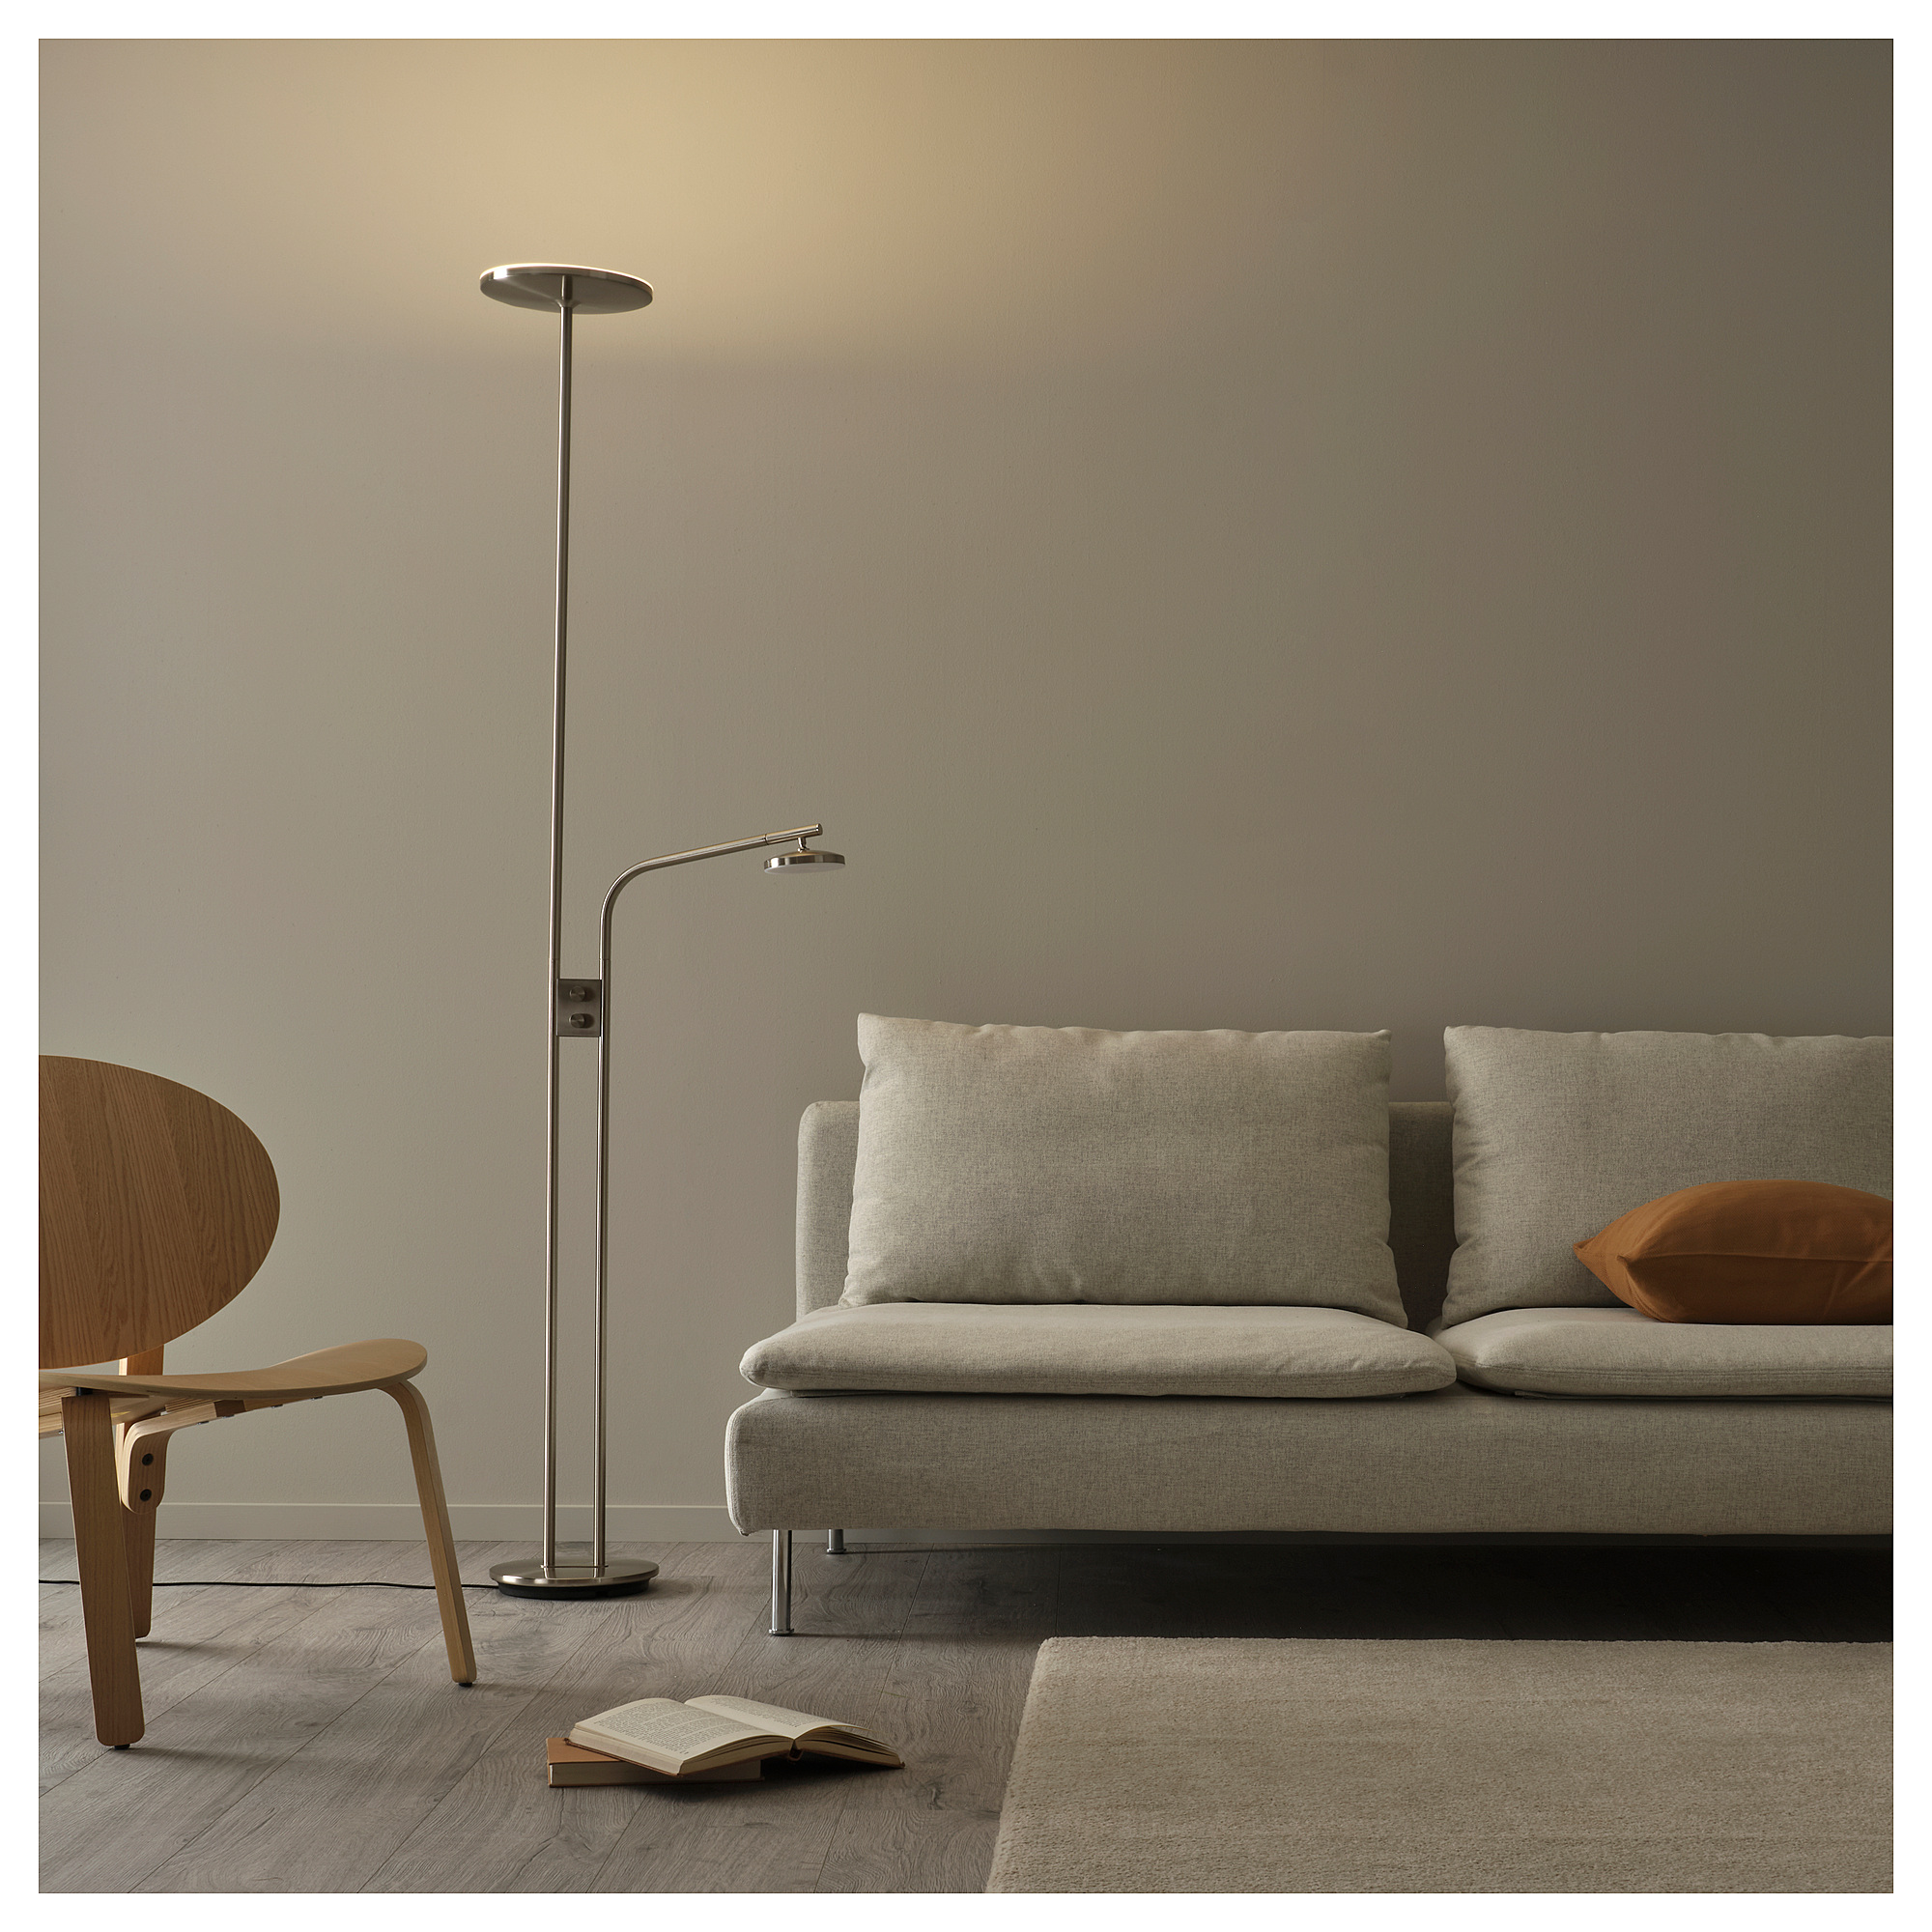 ISJAKT LED floor uplighter/reading lamp